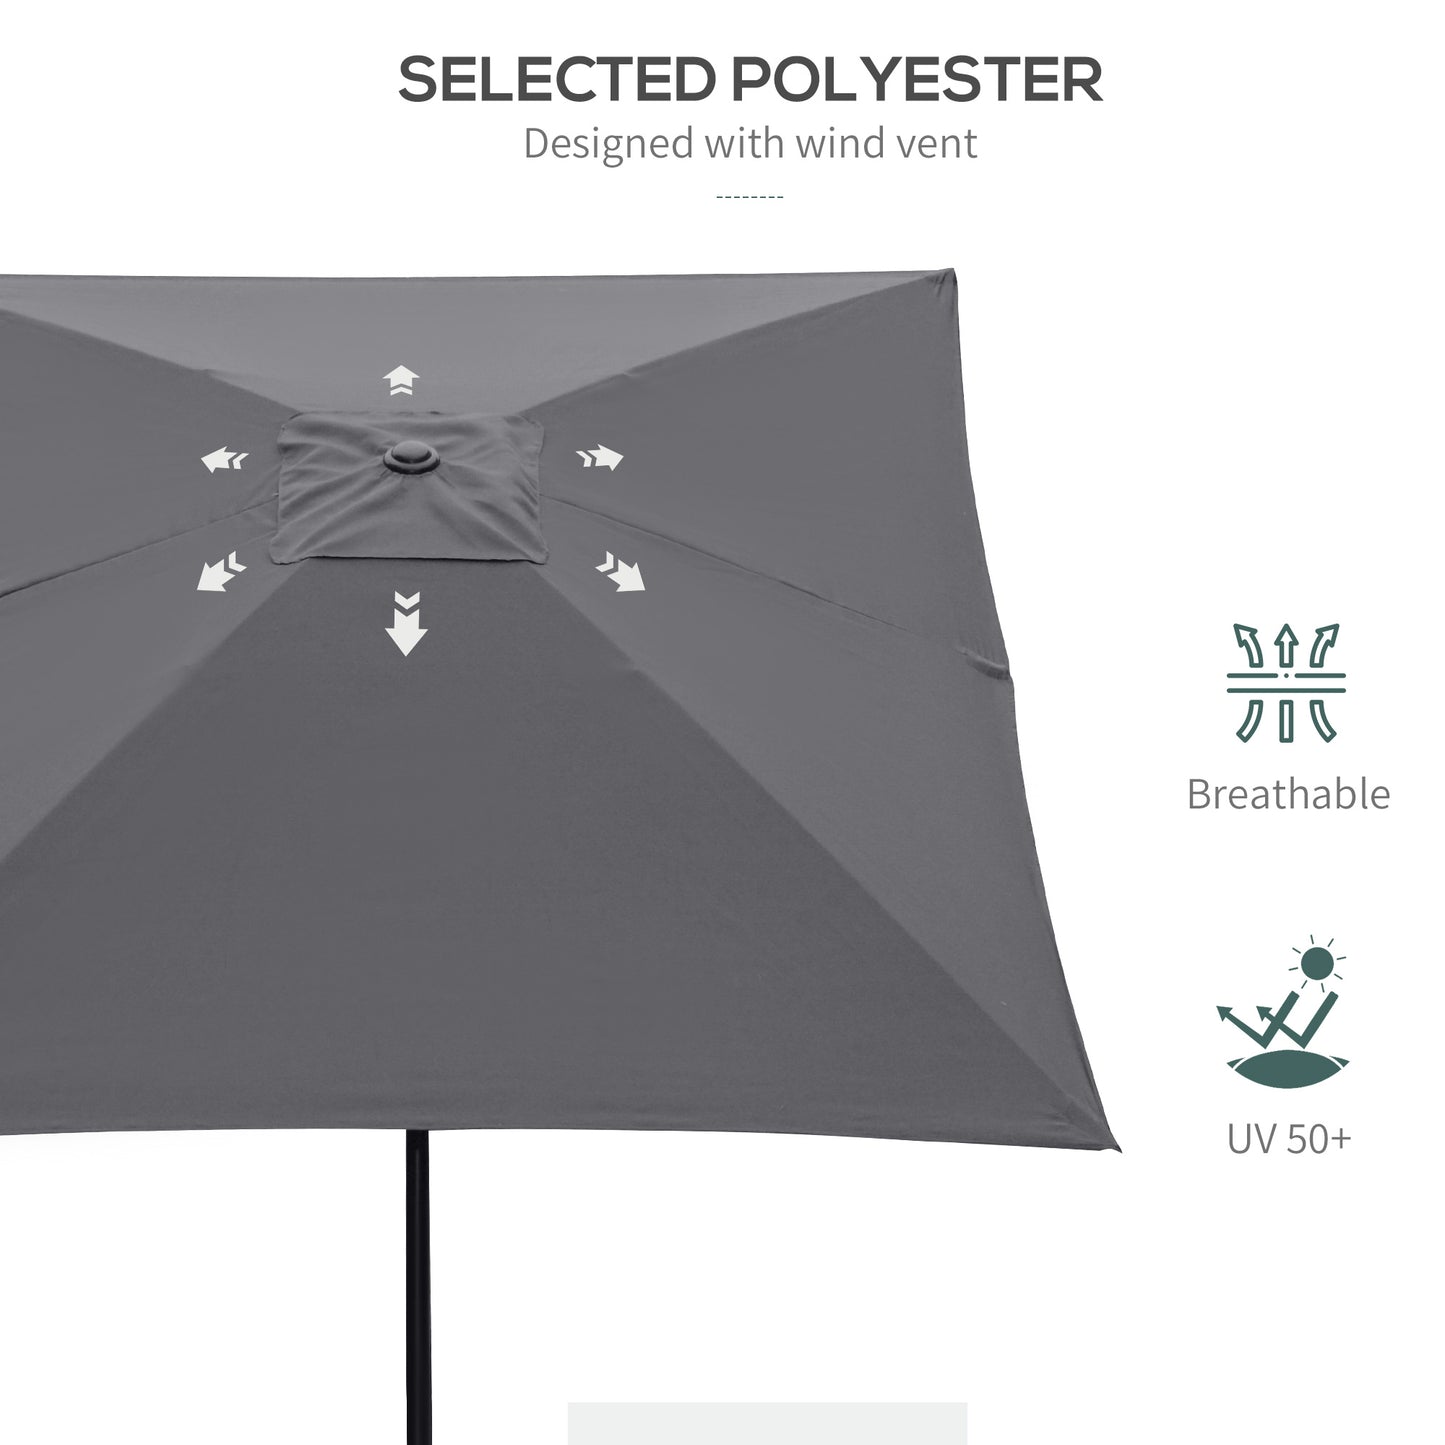 Outsunny 2 x 3m Rectangular Market Umbrella Patio Outdoor Table Umbrellas with Crank & Push Button Tilt, Dark Grey